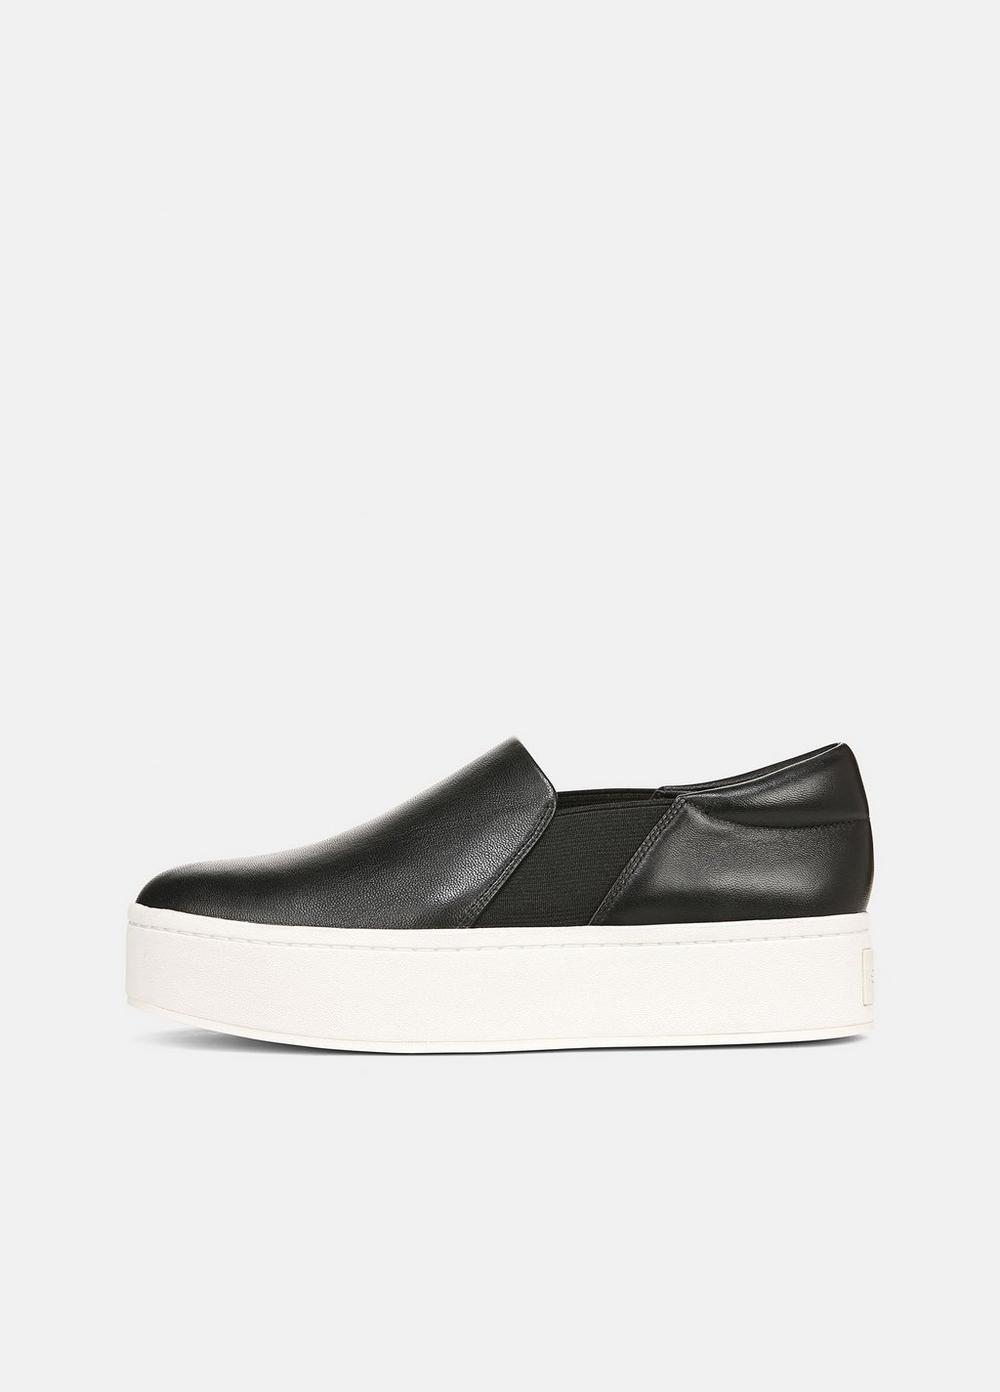 Warren Leather Sneaker, Black, Size 6.5 Vince